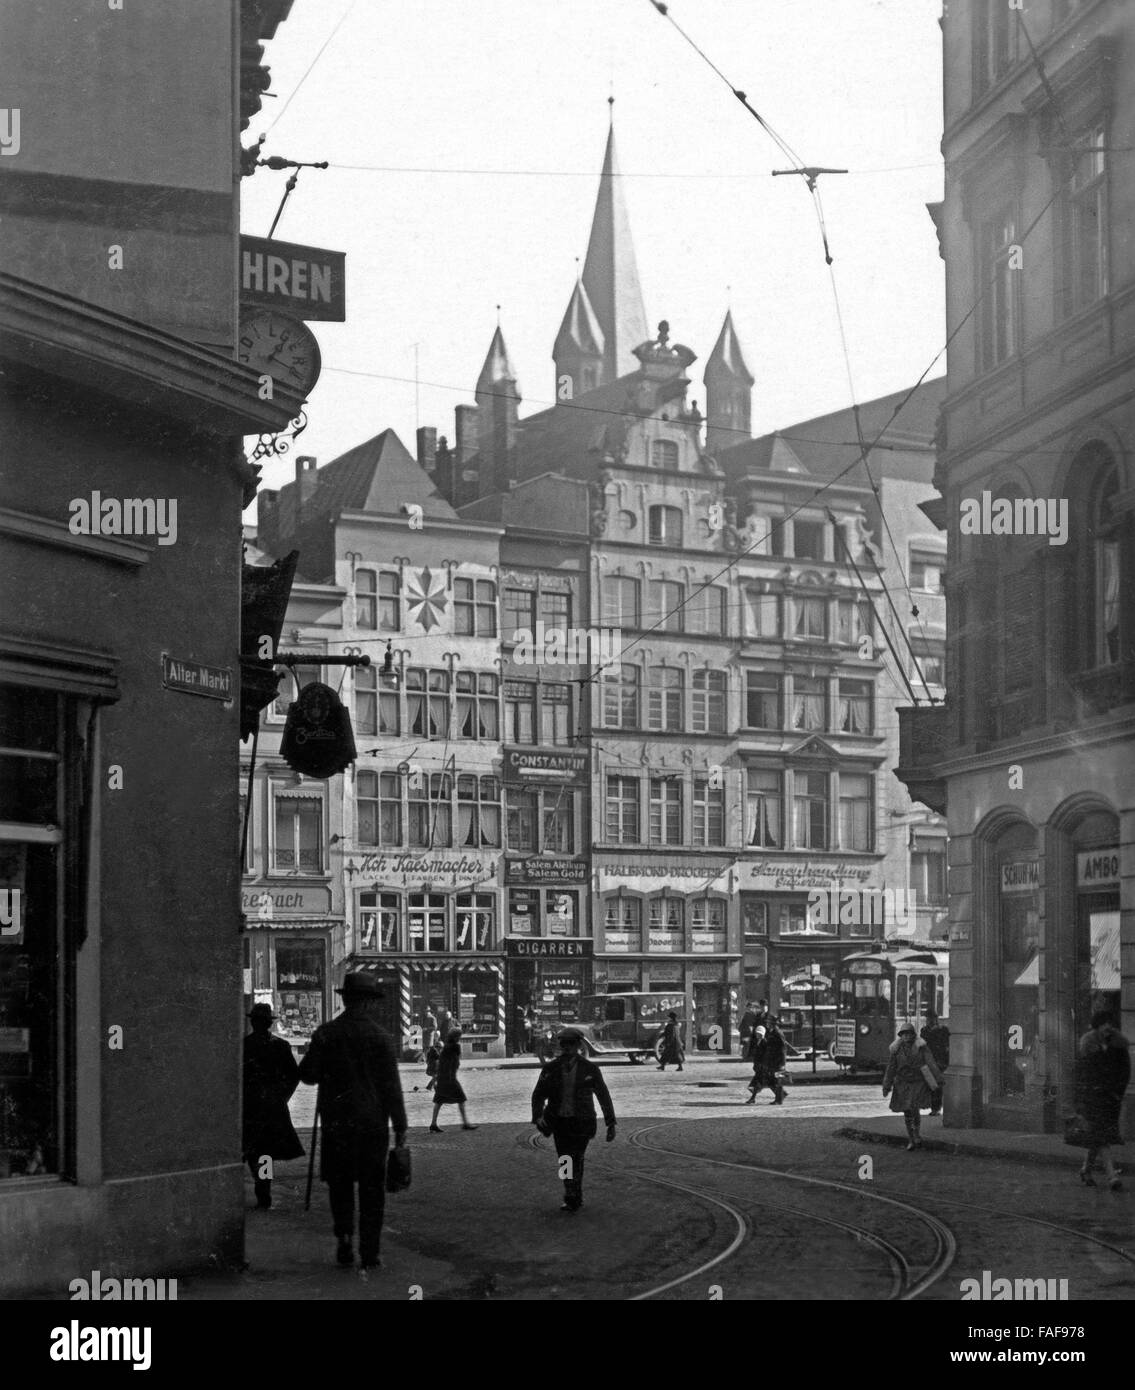 Blick von Unter Taschenmacher auf den Alter Markt in der Altstadt von Köln, Deutschland 1920er Jahre. View from Unter Taschenmacher lane to Alter Markt market in the old city of Cologne, Germany 1920s. Stock Photo